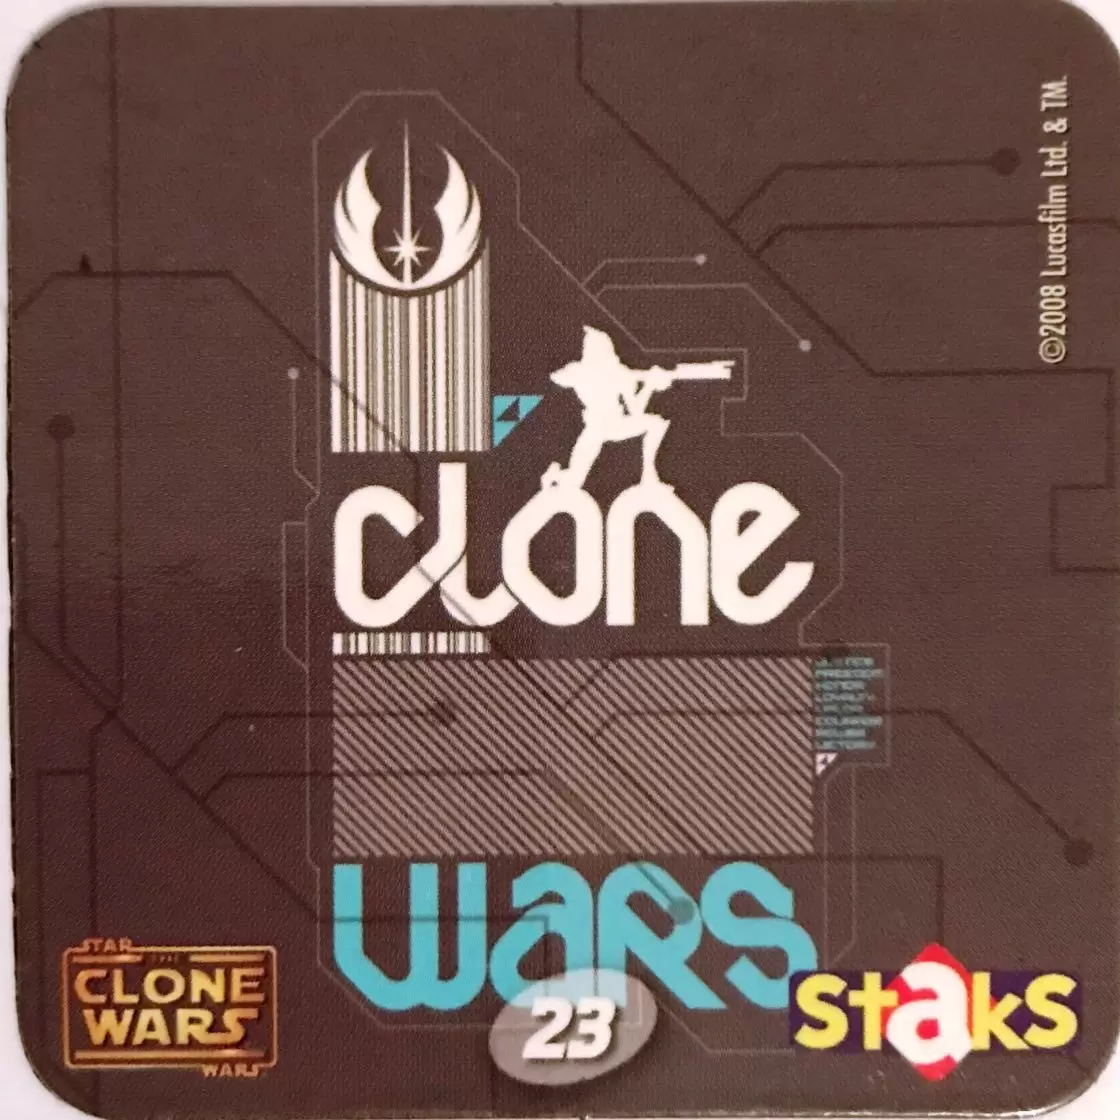 The Clone Wars STAKS - Carte n°023